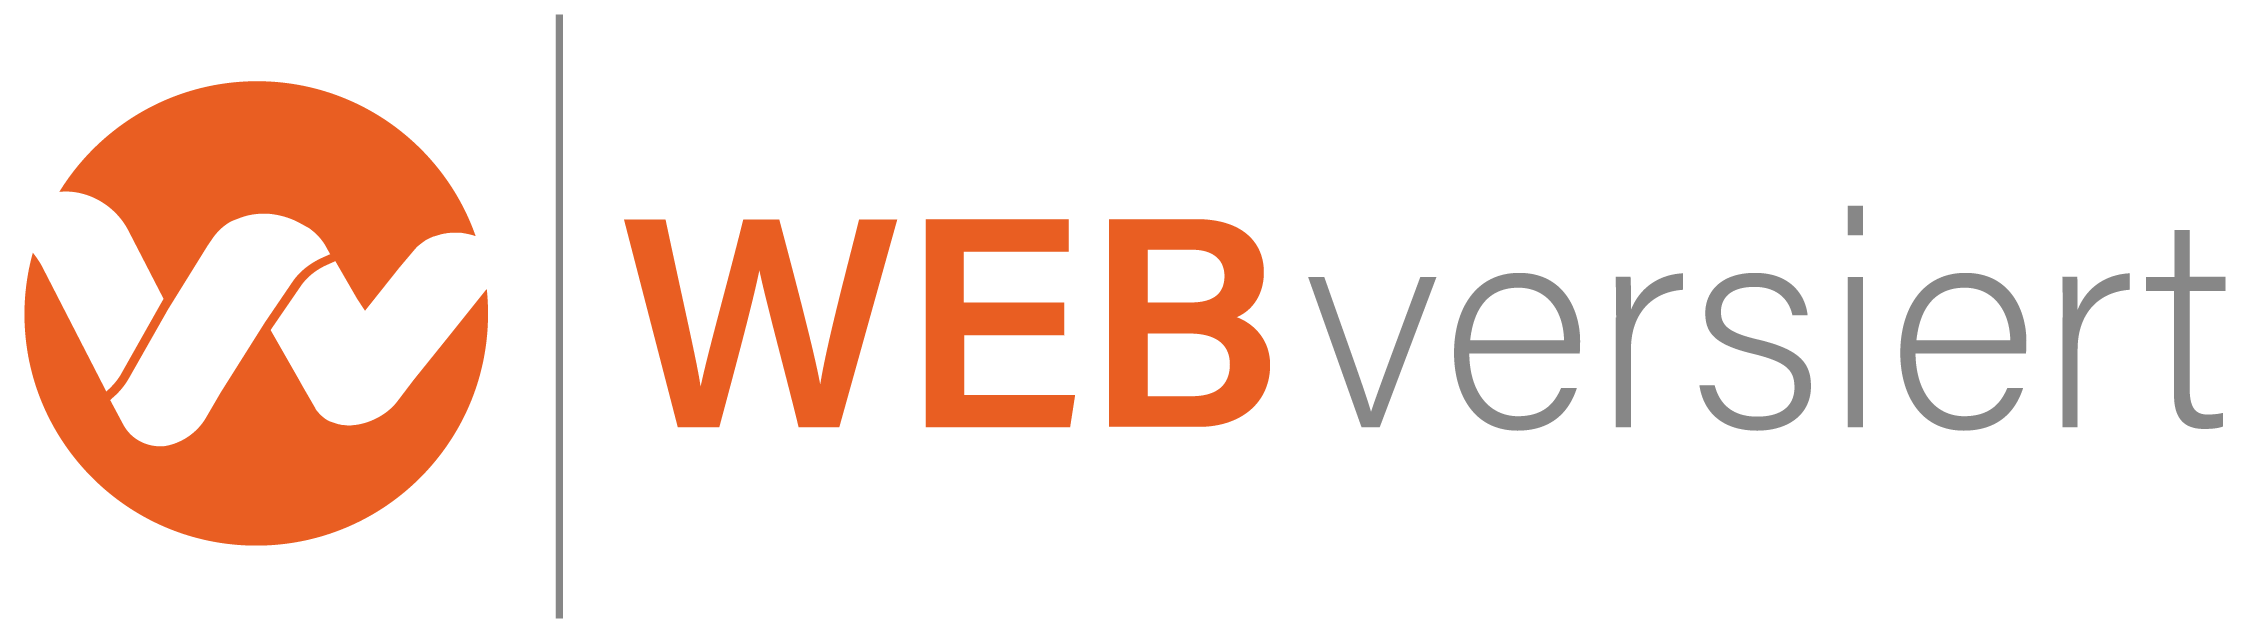 WEBversiert - E-Commerce Agentur